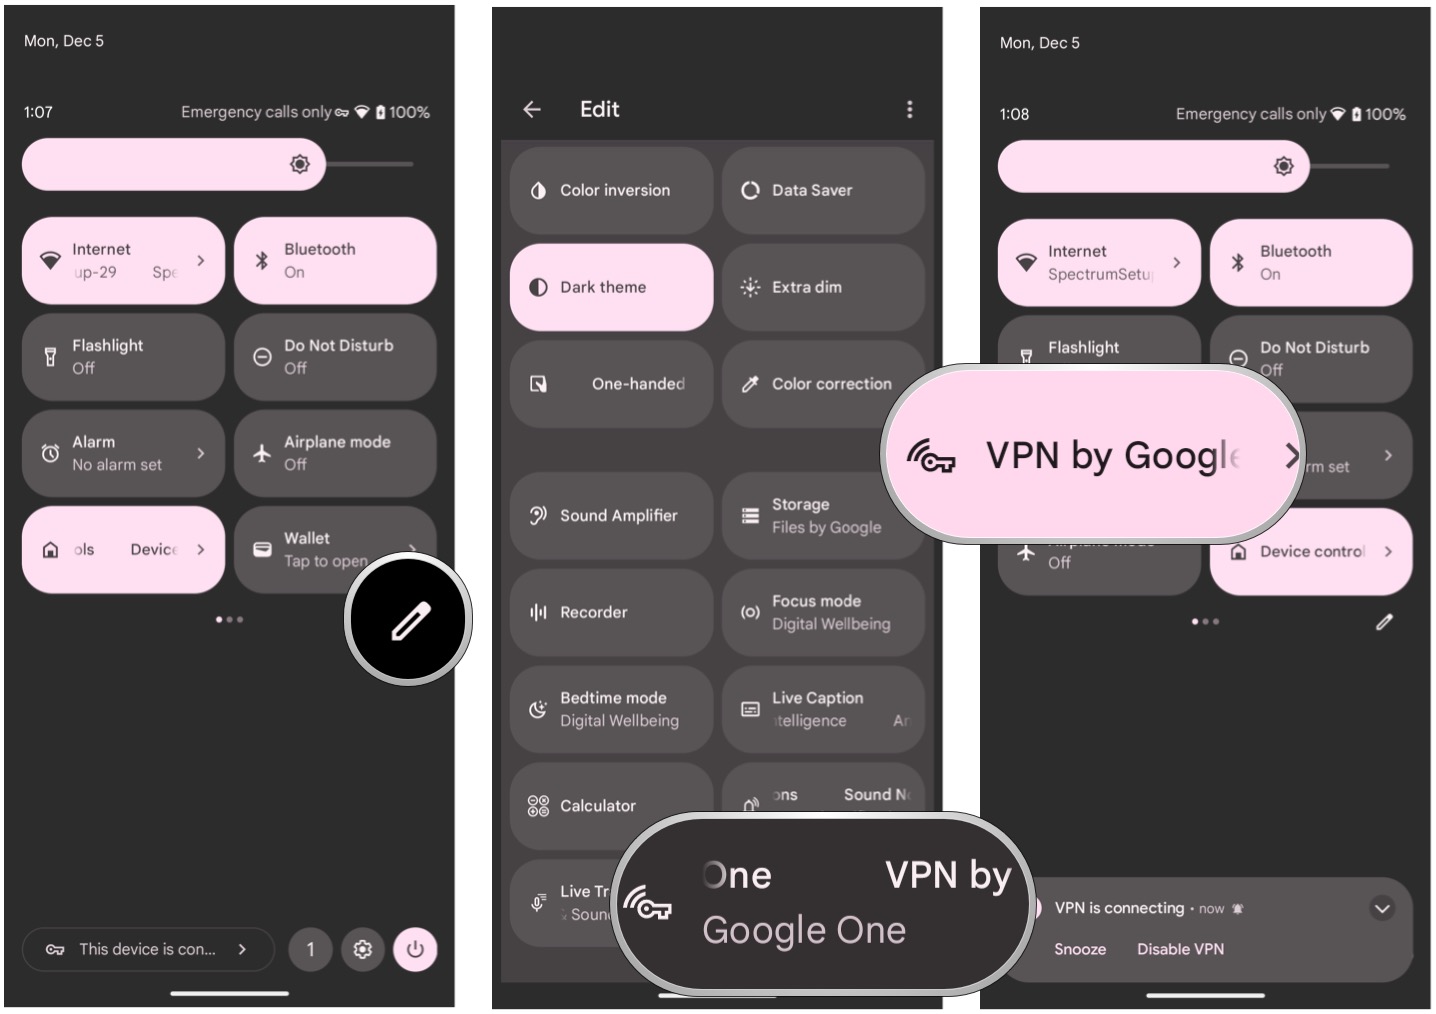 Adicione a VPN do Google One às Configurações rápidas mostrando as Configurações rápidas, selecione Editar, arraste a VPN para o topo, selecione o bloco VPN para ativar e desativar